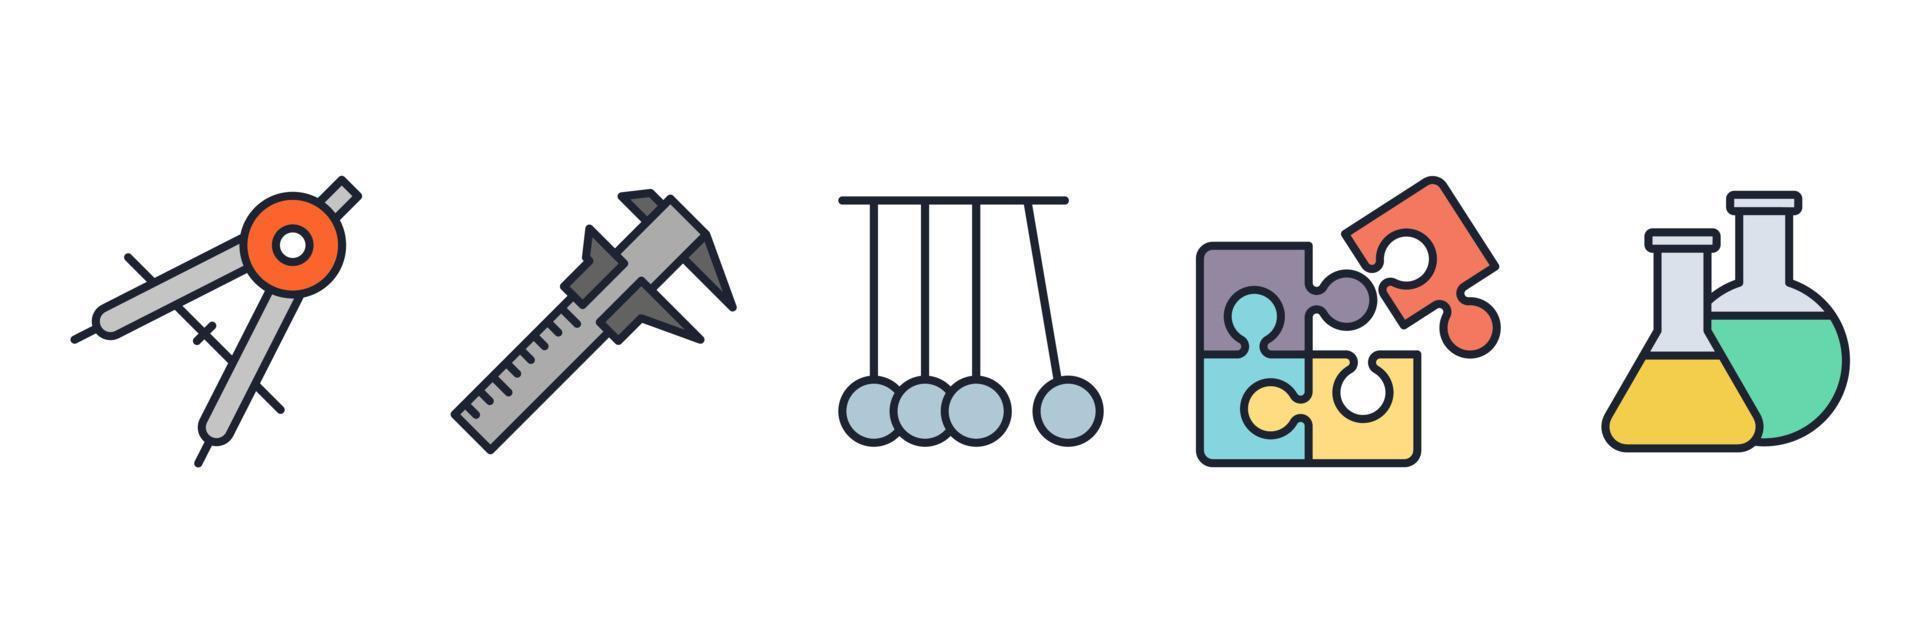 modèle de symbole d'icône de jeu scientifique pour illustration vectorielle de logo de collection de conception graphique et web vecteur